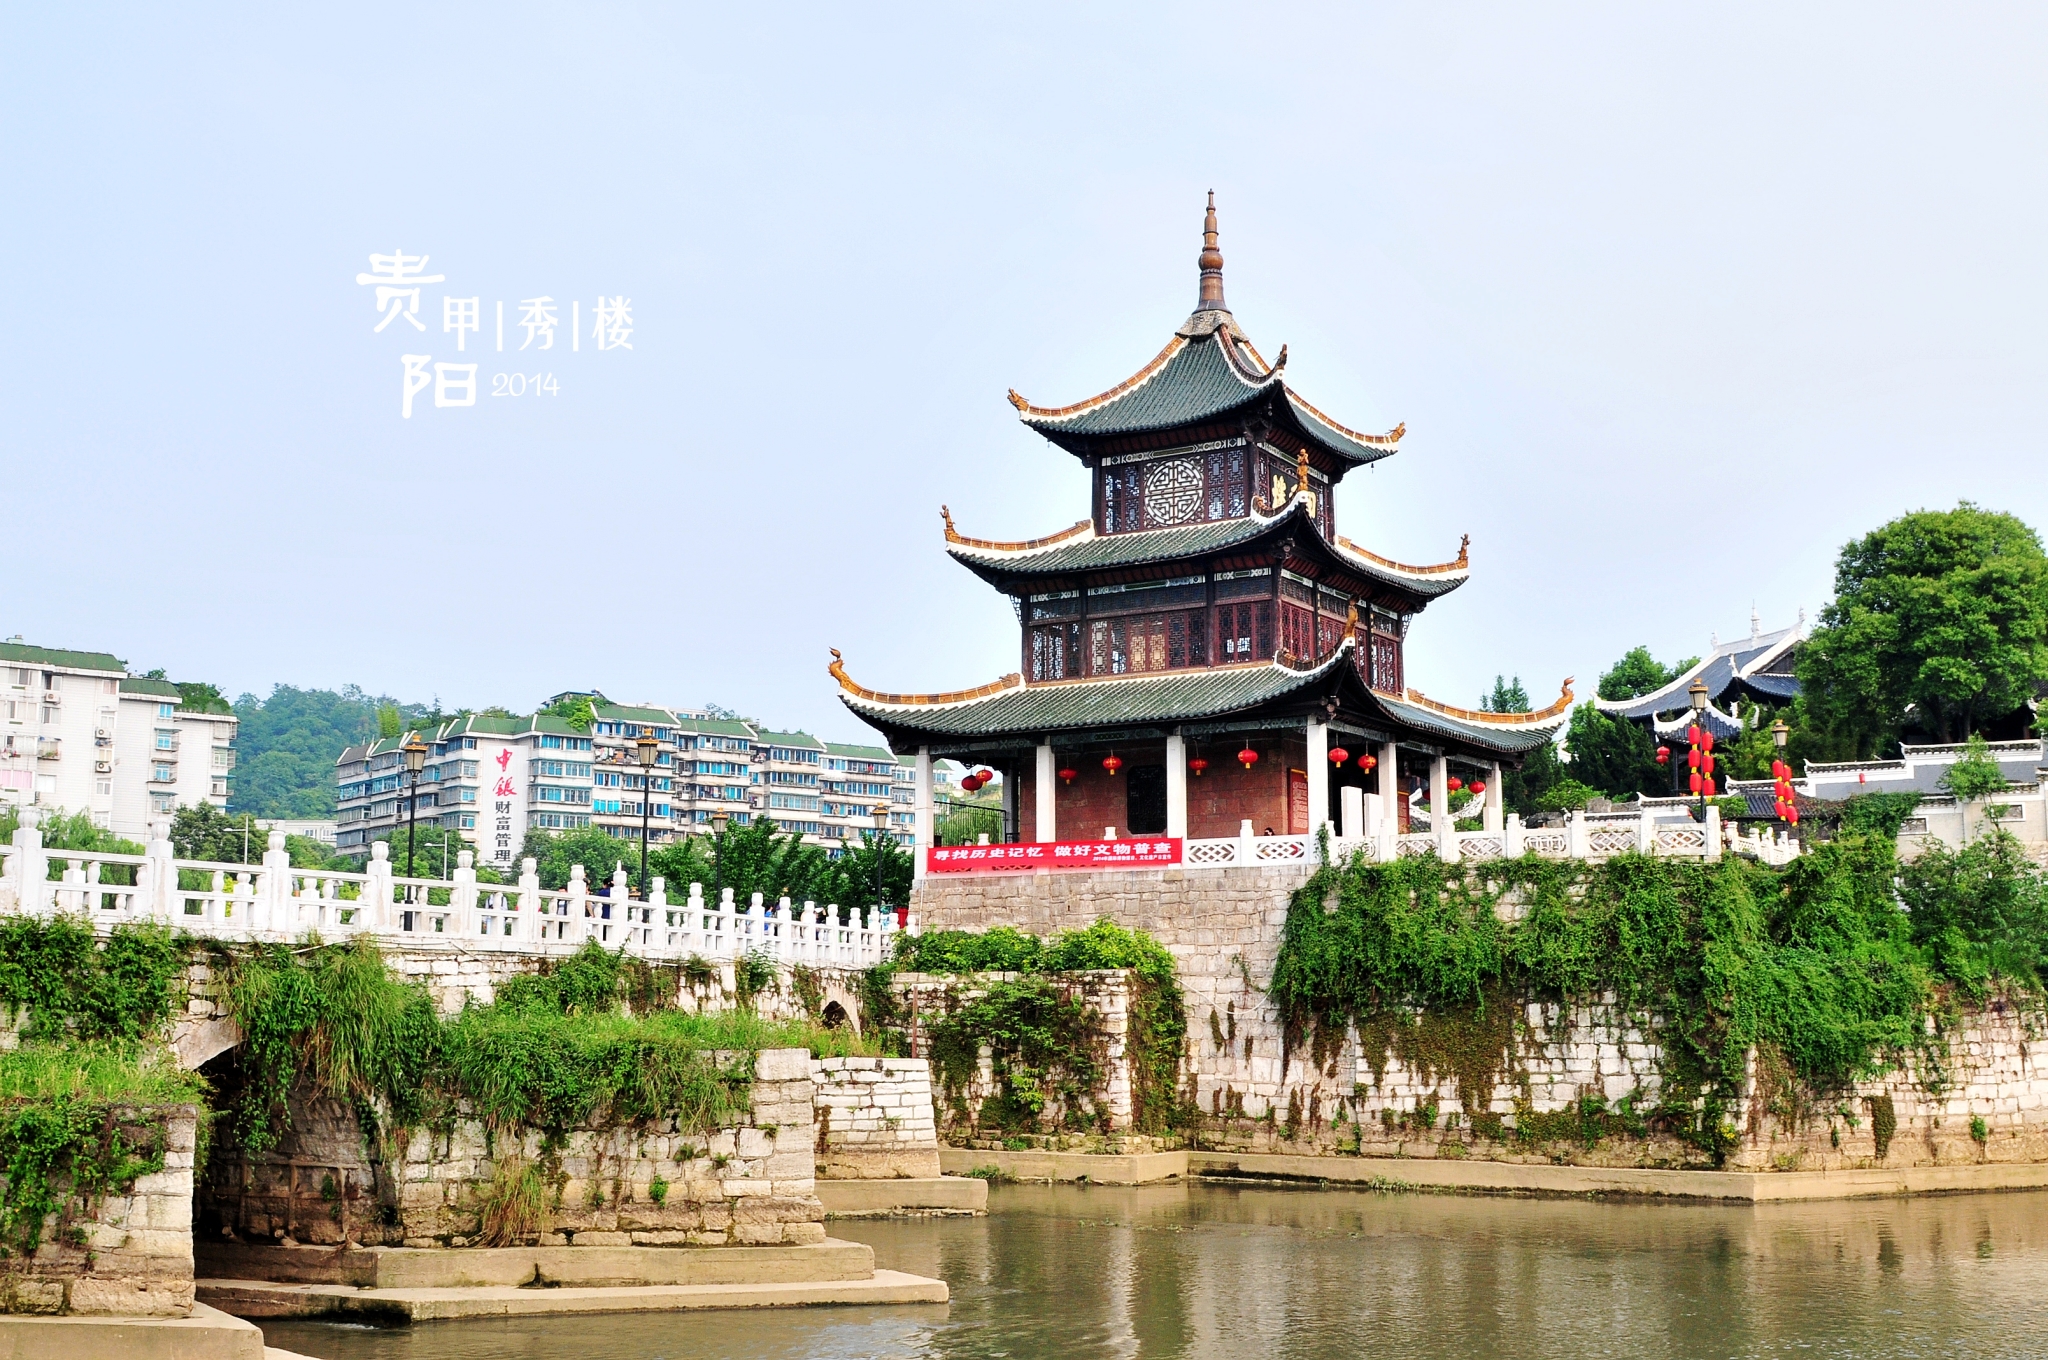 旅游景点 贵州省景点 贵州旅游景点  甲秀楼可谓是贵阳的标志了,但凡